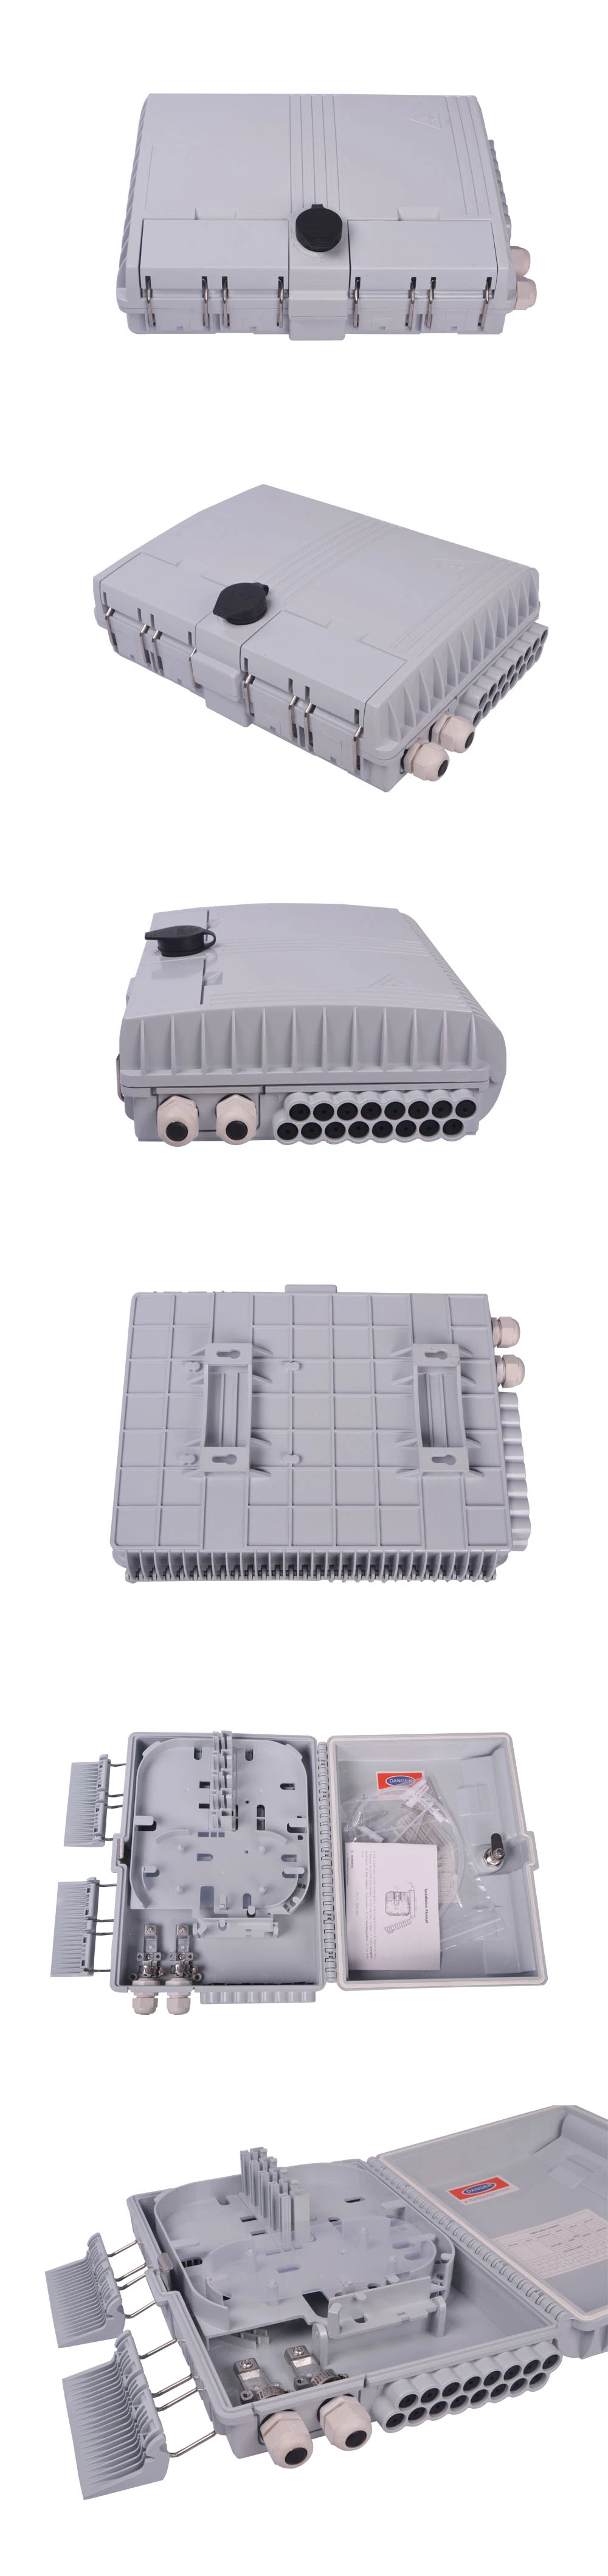 FTTH Wall Mount 16 Core Fiber Access Terminal Box Fiber Optic Caja Nap Box